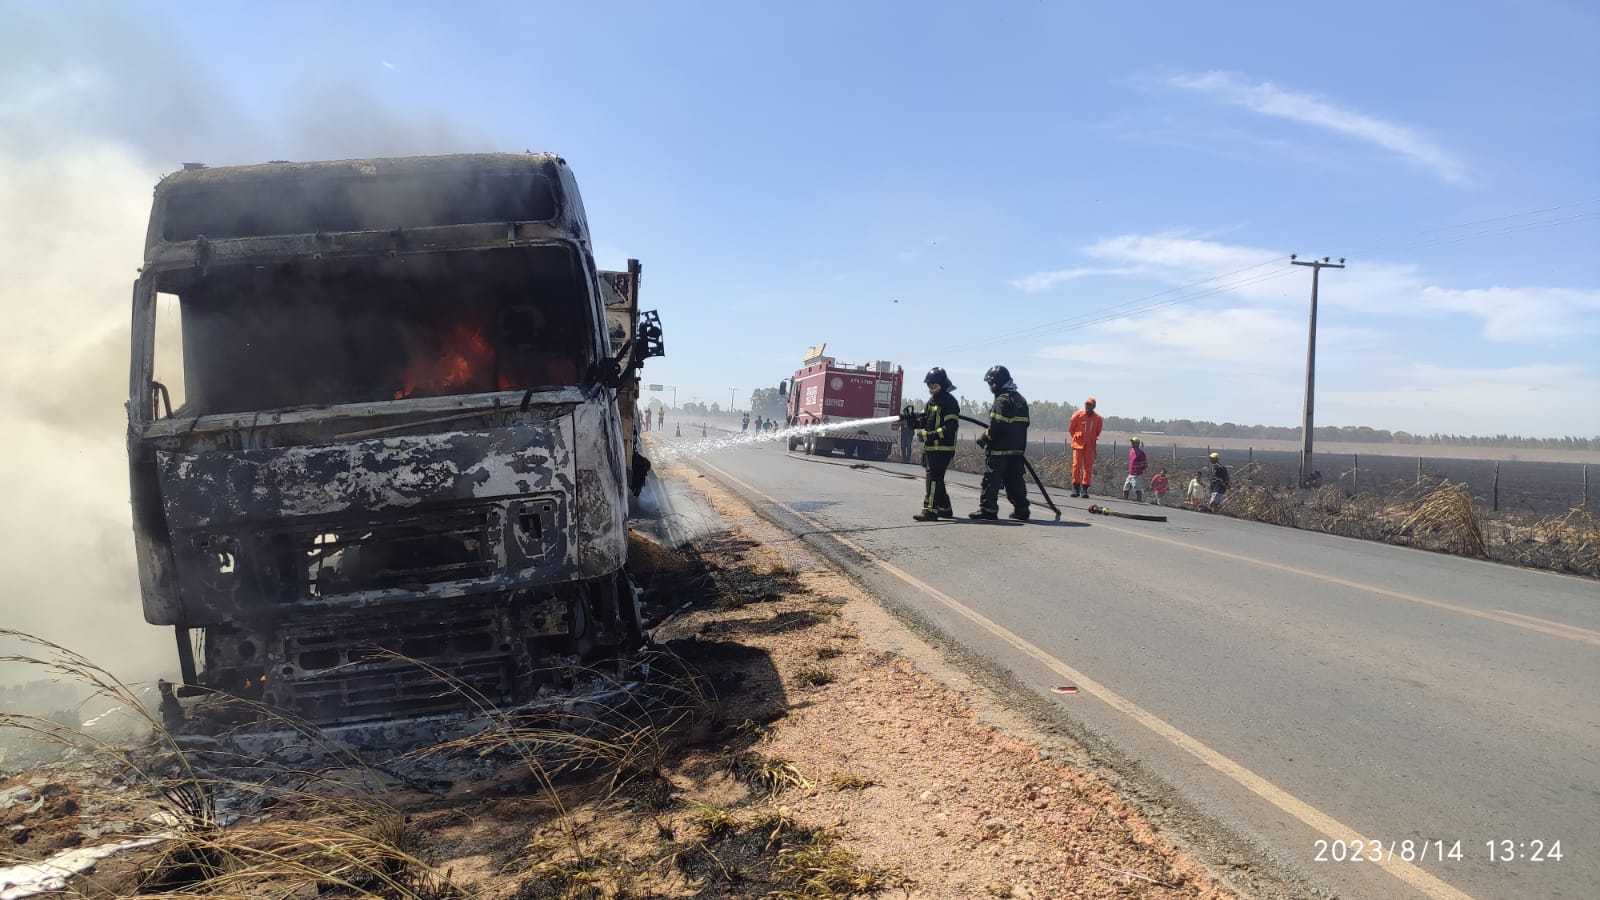 Por volta das 12h10 da tarde desta segunda-feira (14), o corpo de bombeiros foi acionado para combater um incêndio em uma carreta bitrem carregada com soja, na BA-459, próximo ao povoado de Cerradão, município de Barreiras (BA).